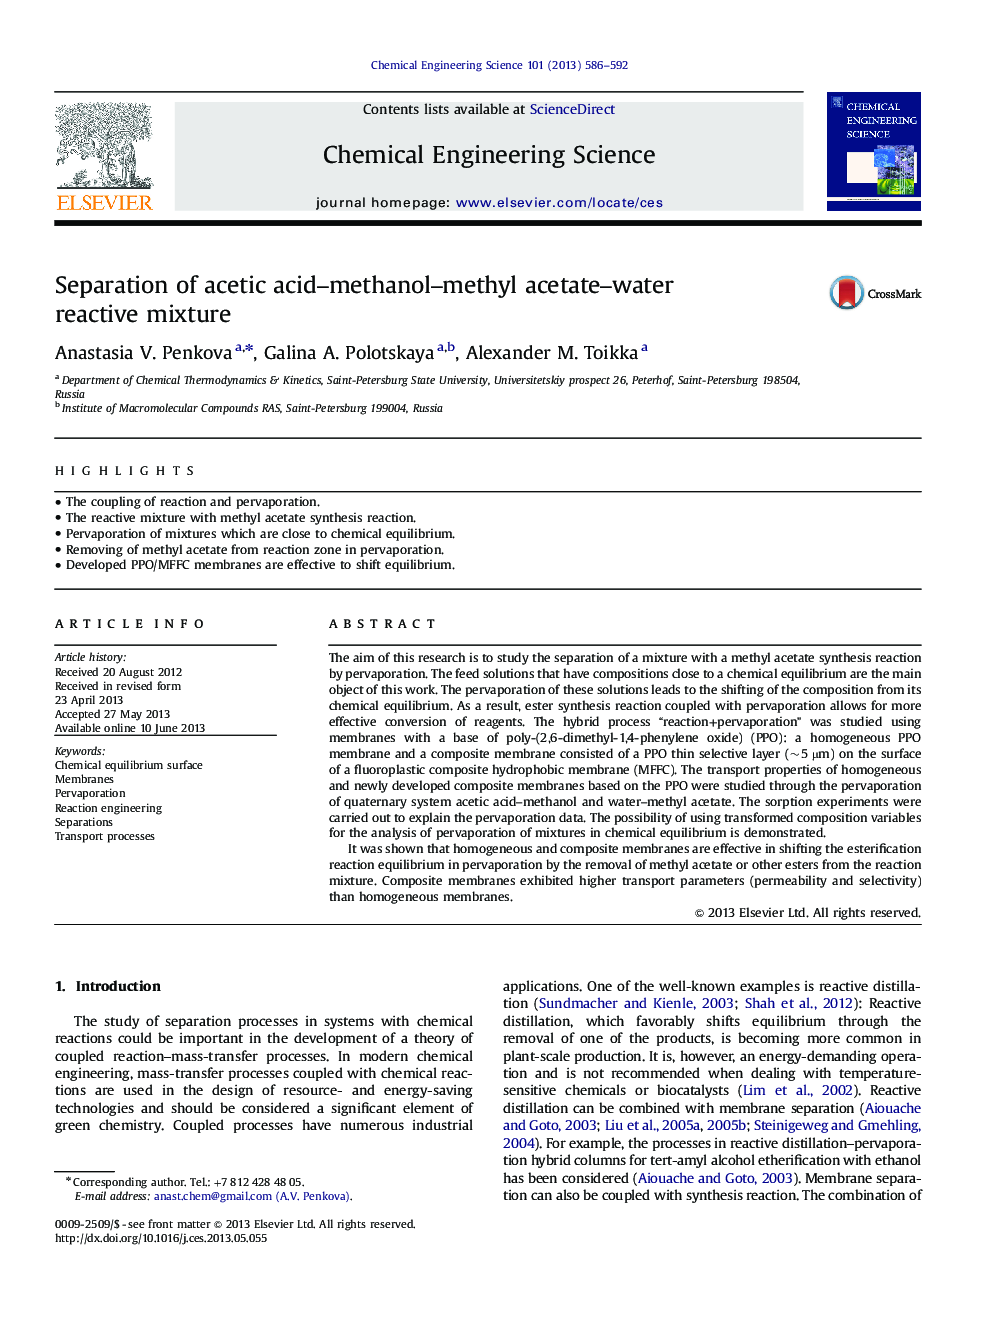 Separation of acetic acid-methanol-methyl acetate-water reactive mixture